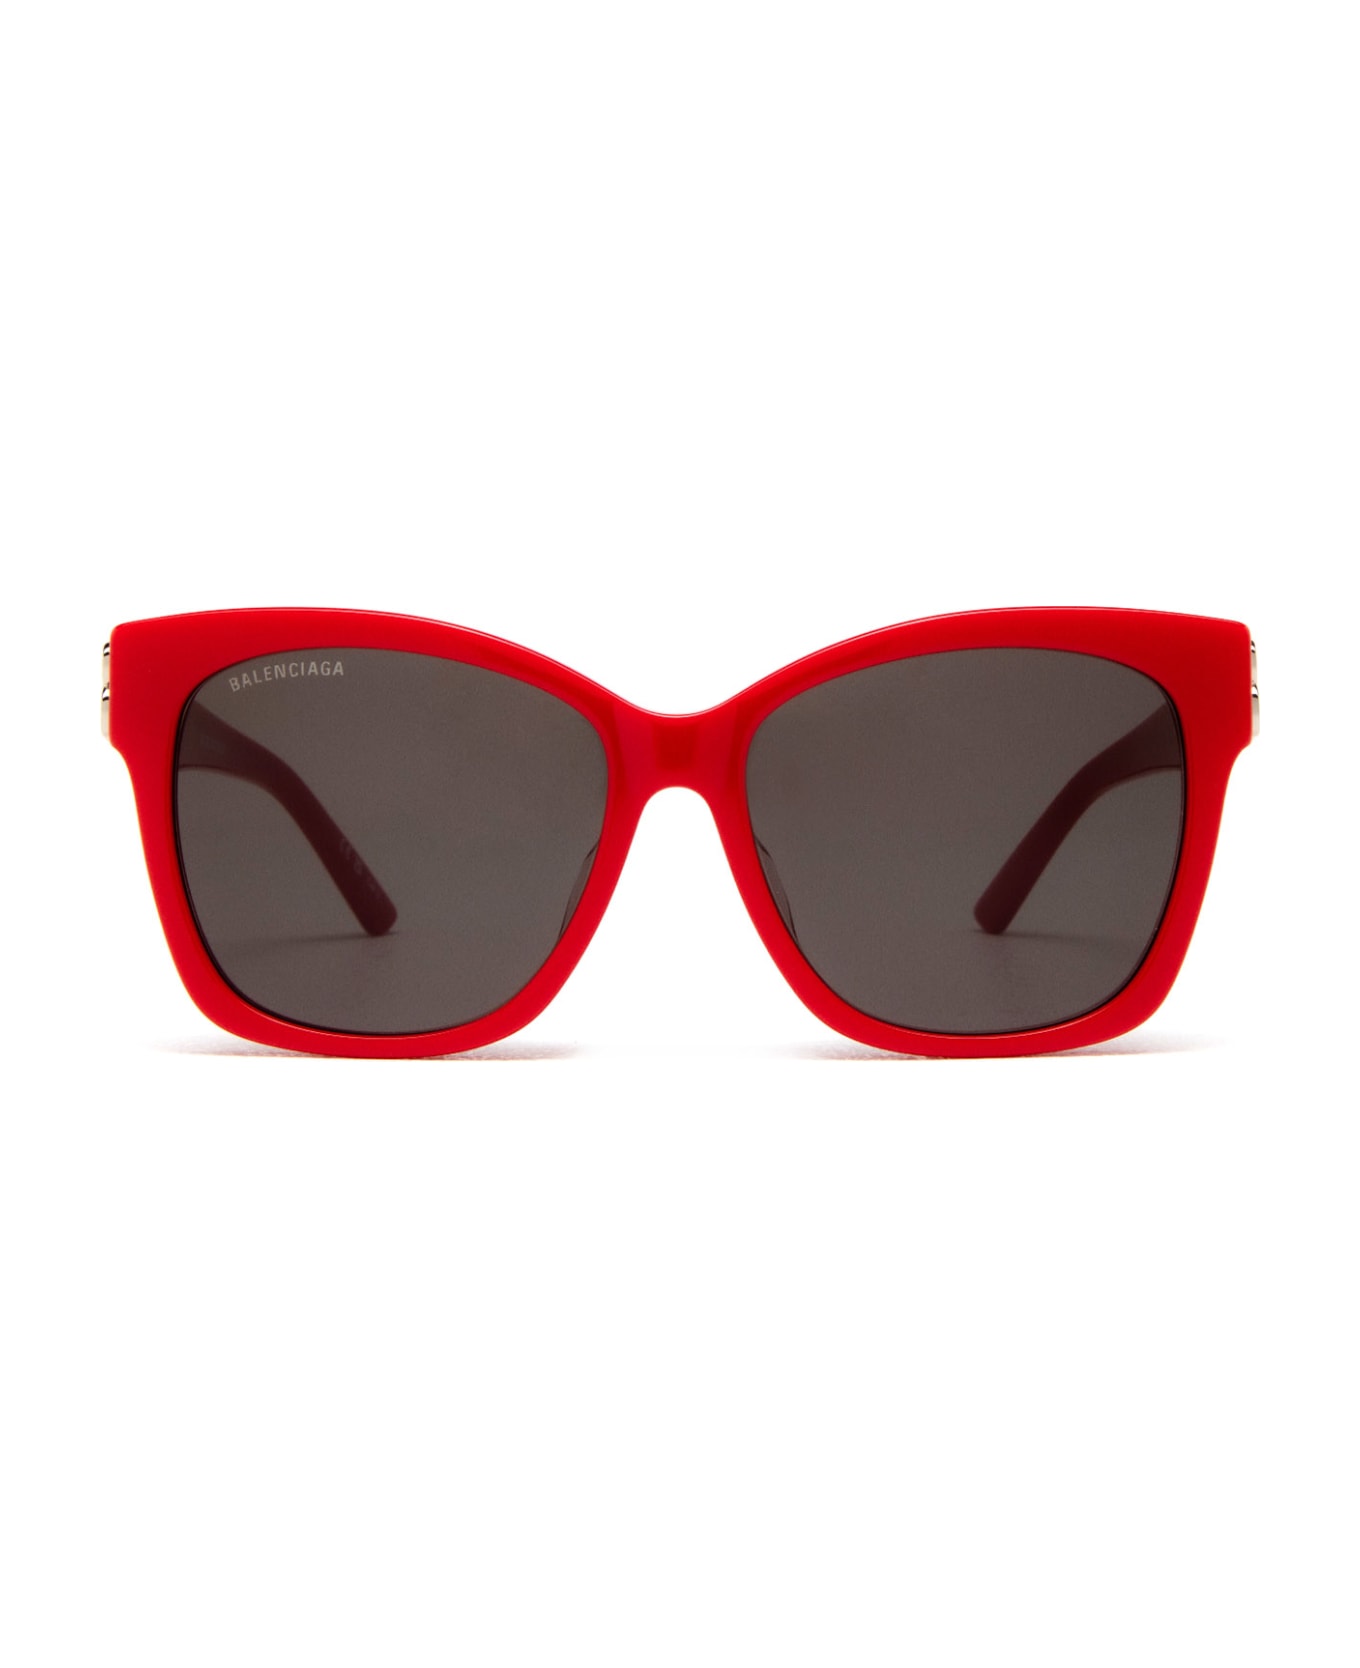 Balenciaga Eyewear Bb0102sa Red Sunglasses - Red